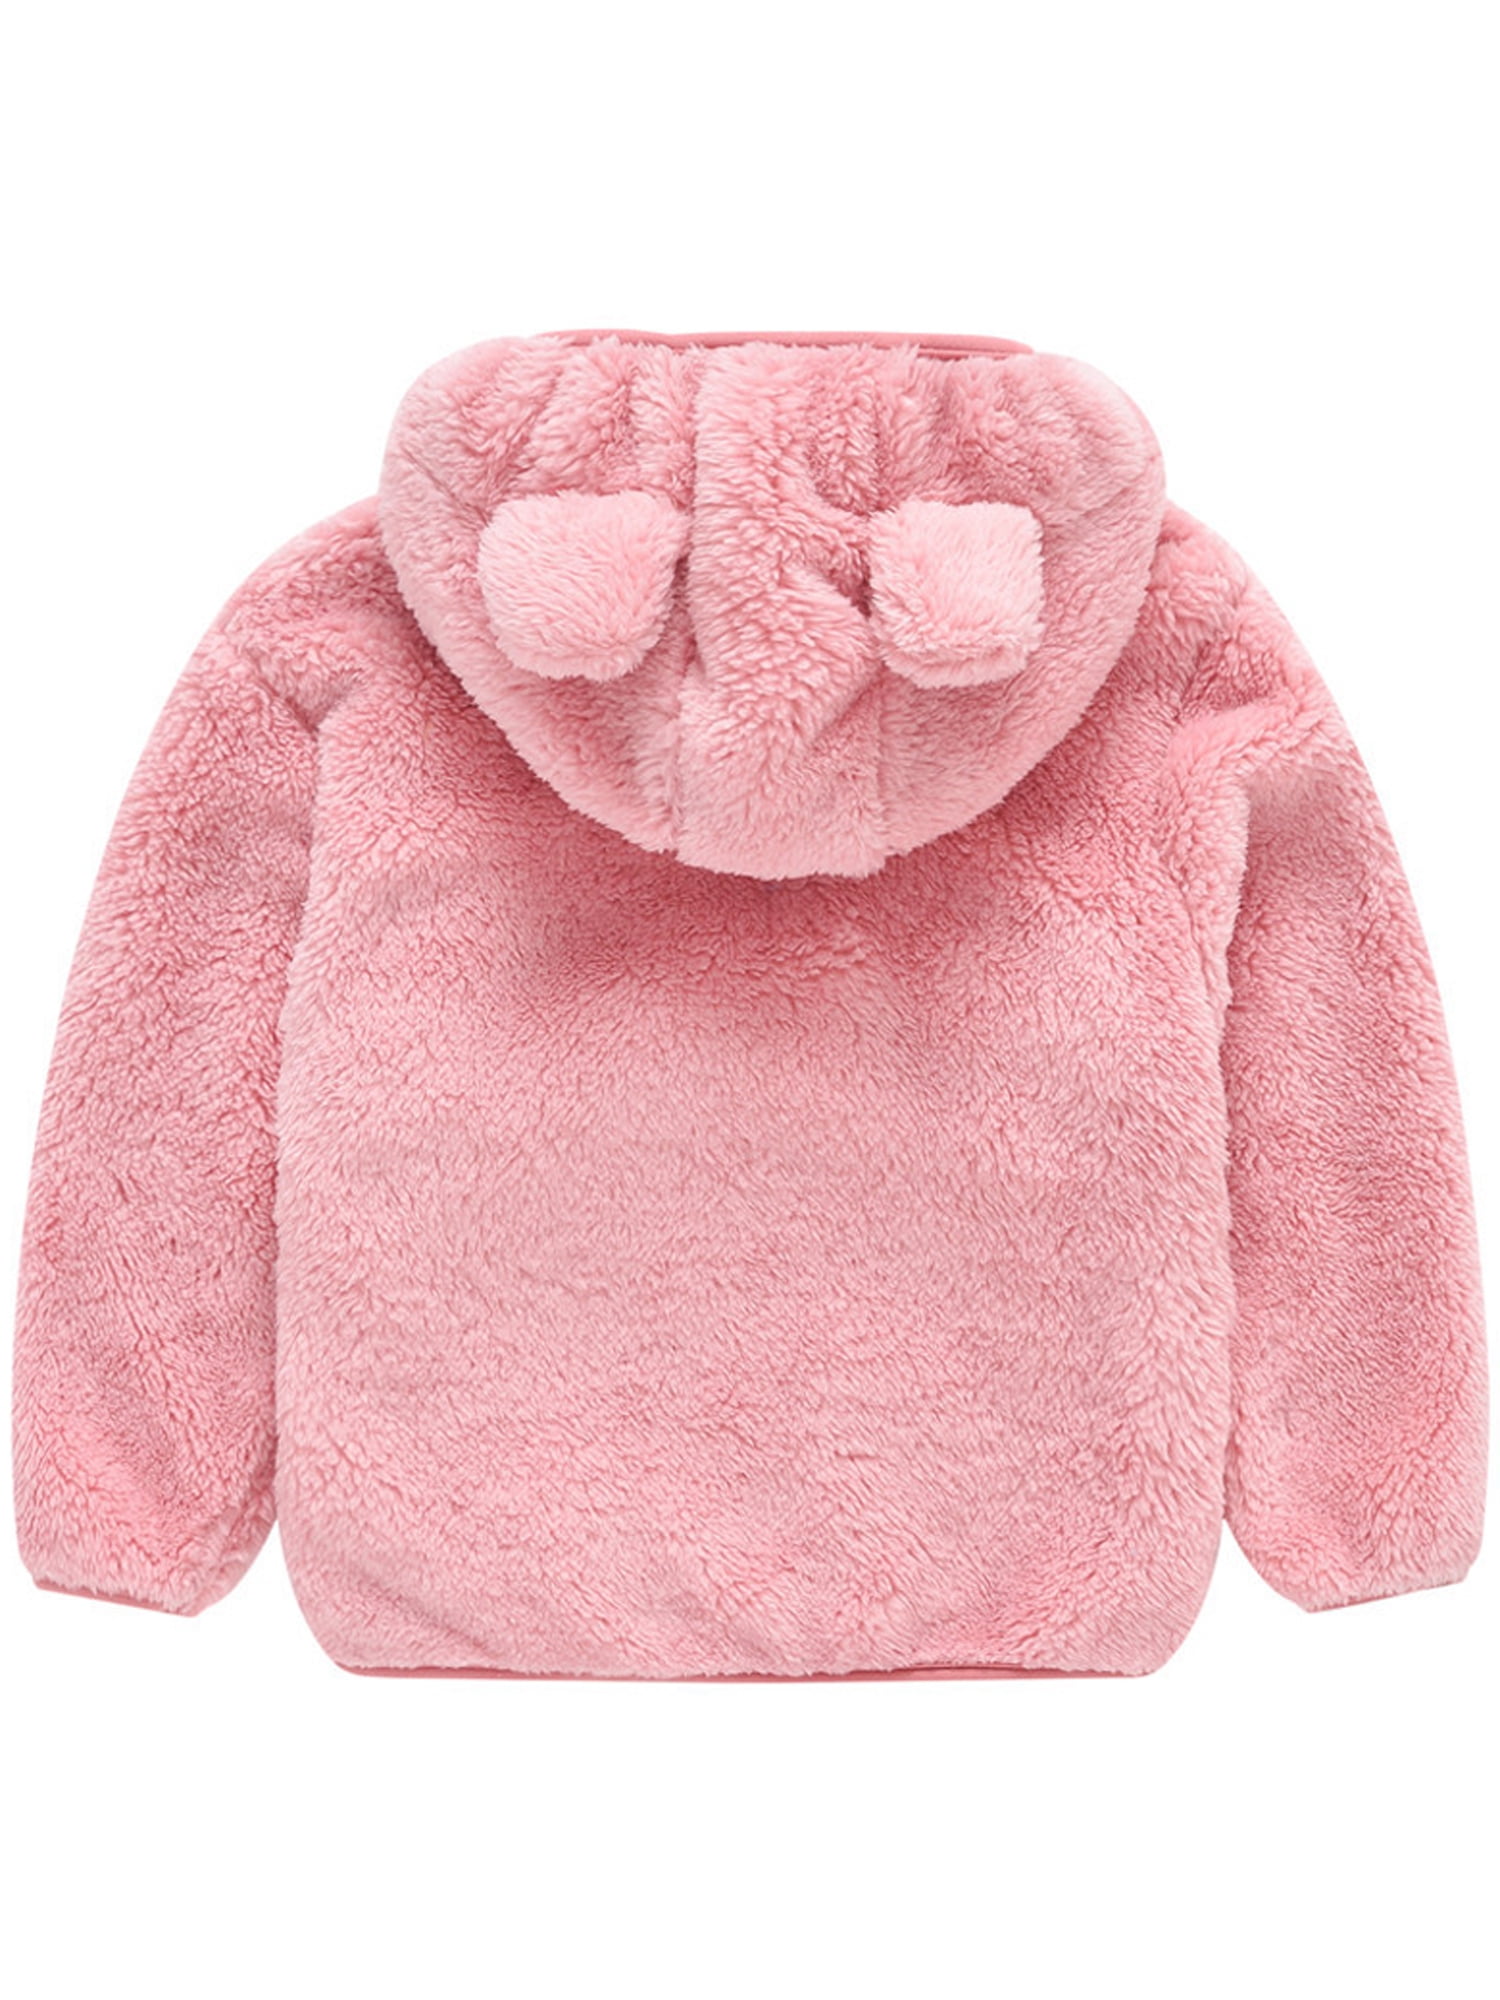 LOTUCY Baby Boys Girls Warm Fleece Hoodie Winter Warm Coat Jacket Cute Bear Shape Outwear